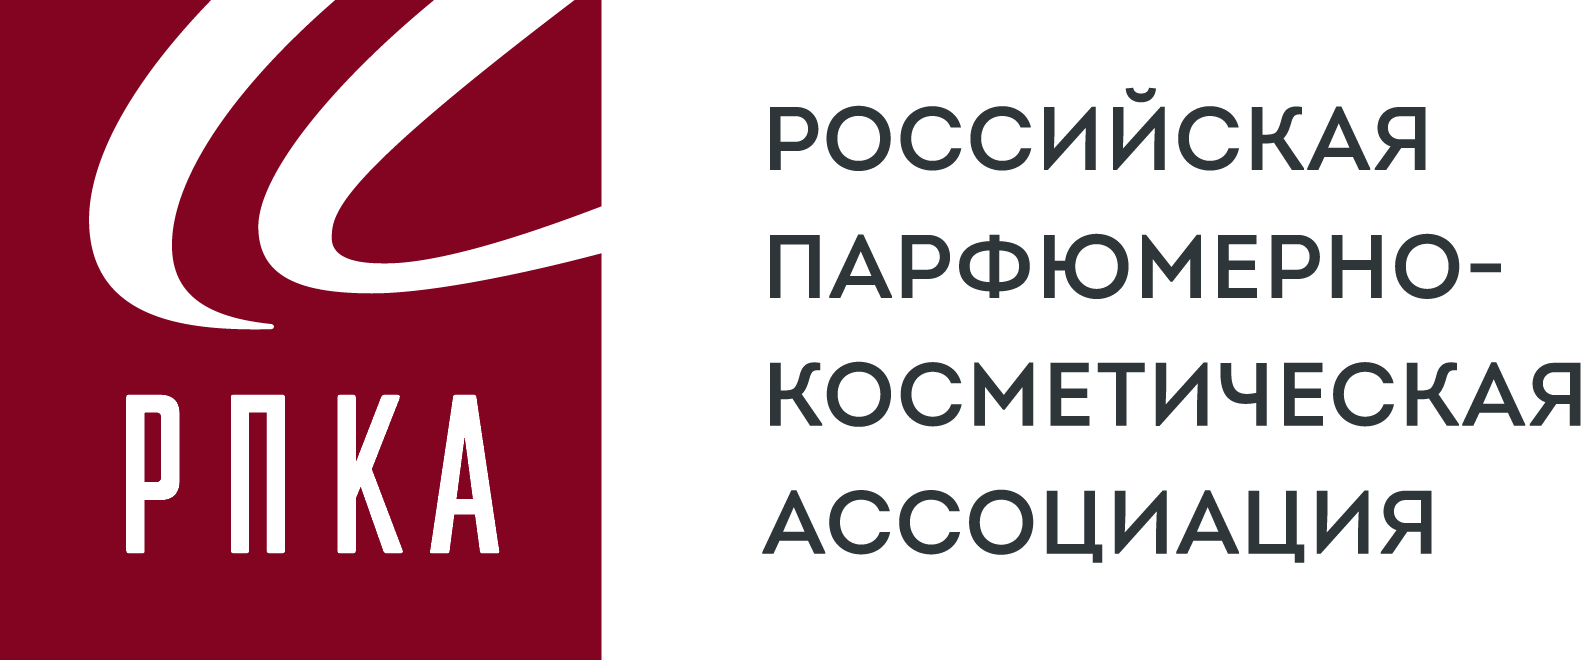 Российская Парфюмерно-Косметическая Ассоциация (РПКА)